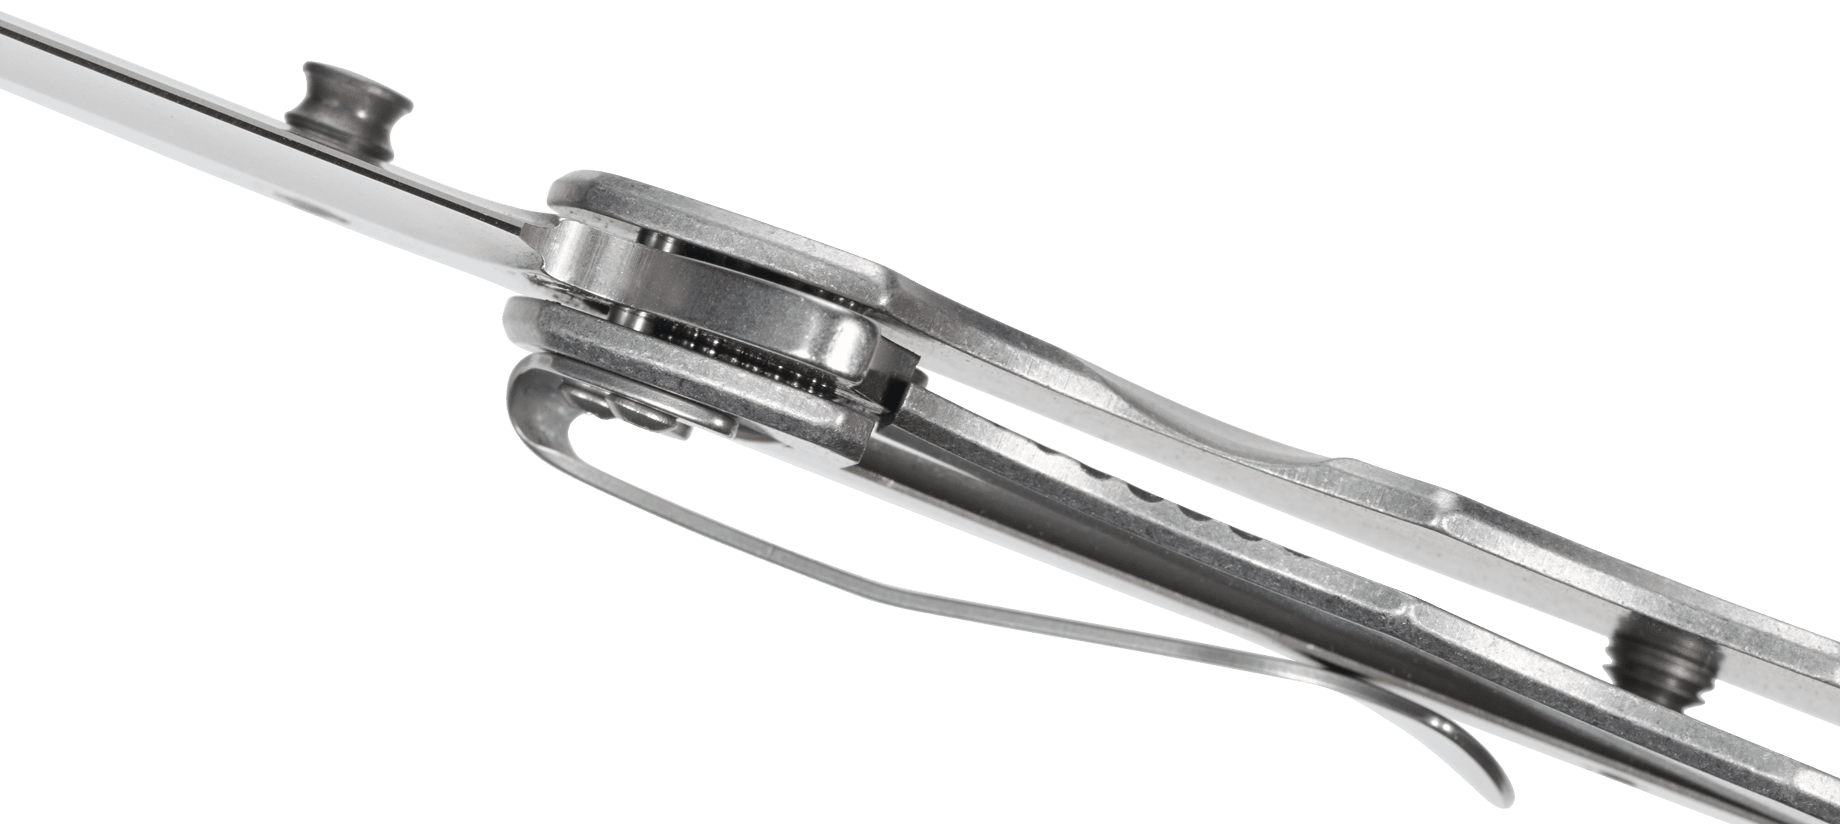 фото Складной нож crkt rasp, сталь aus-8, рукоять нержавеющая сталь 420j2